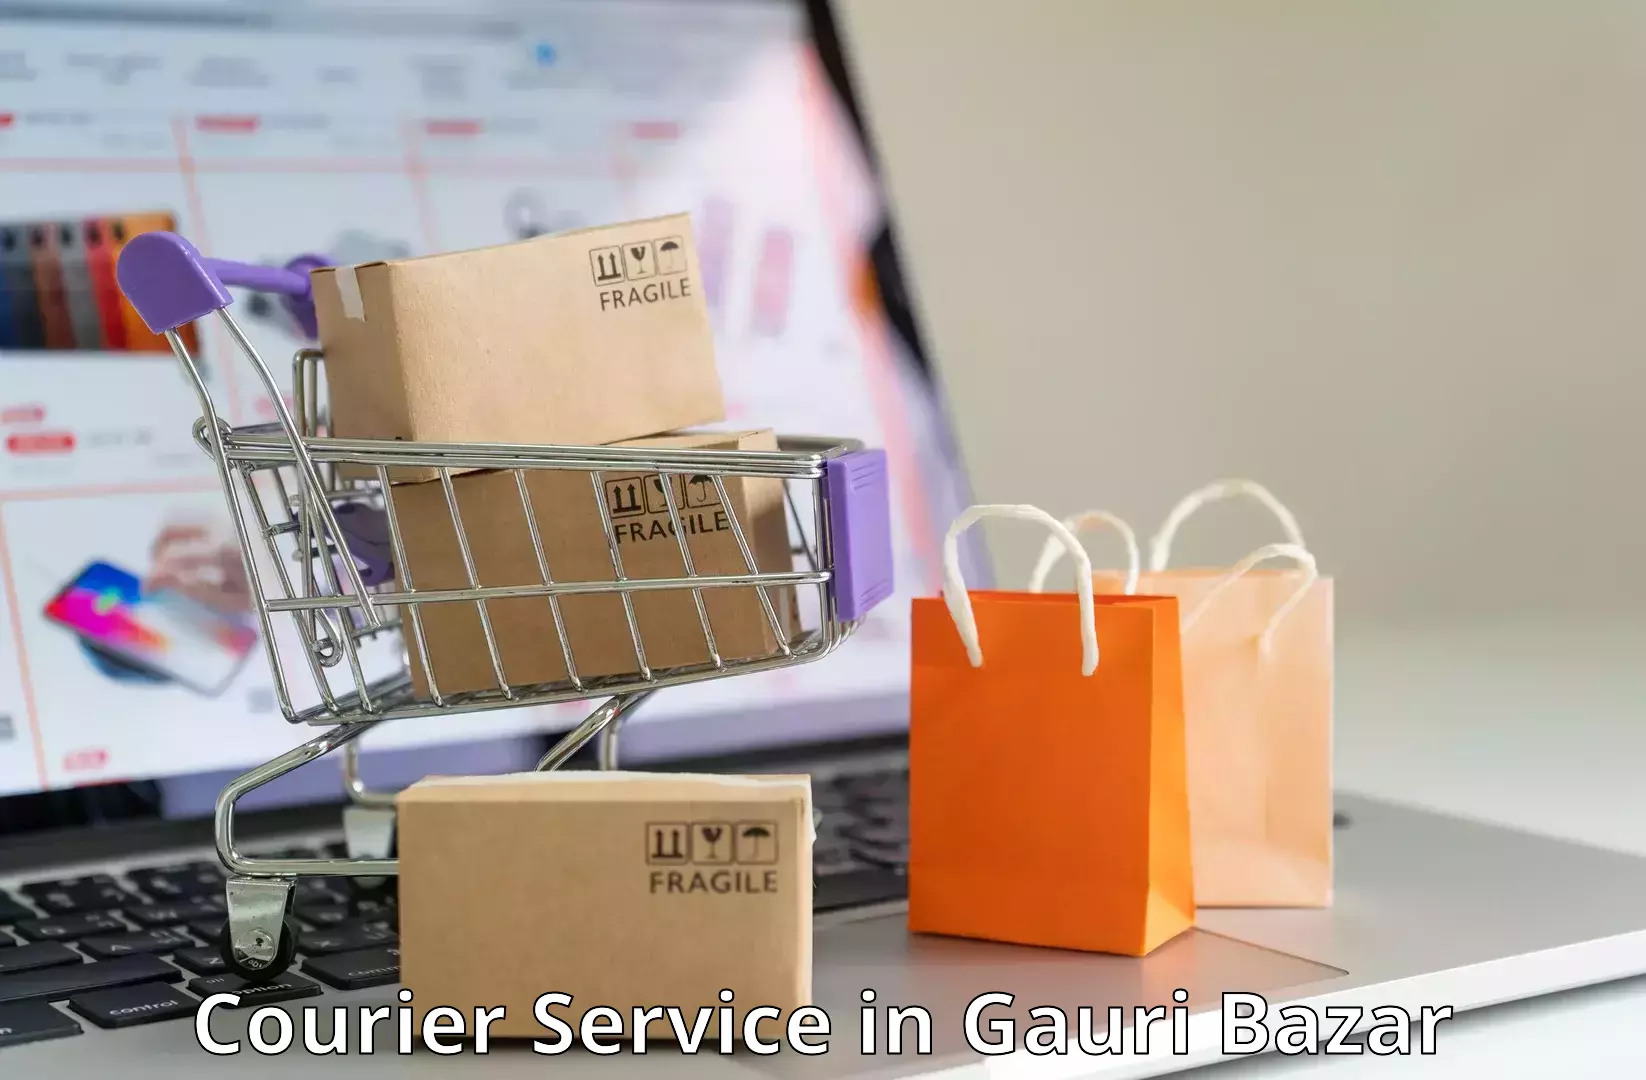 Premium courier services in Gauri Bazar